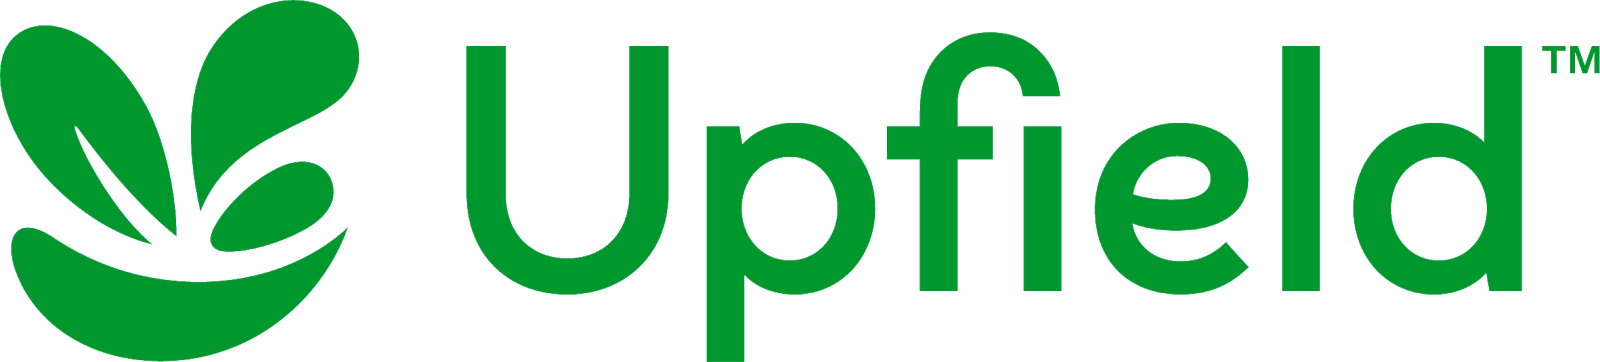 Upfield-logo-2018